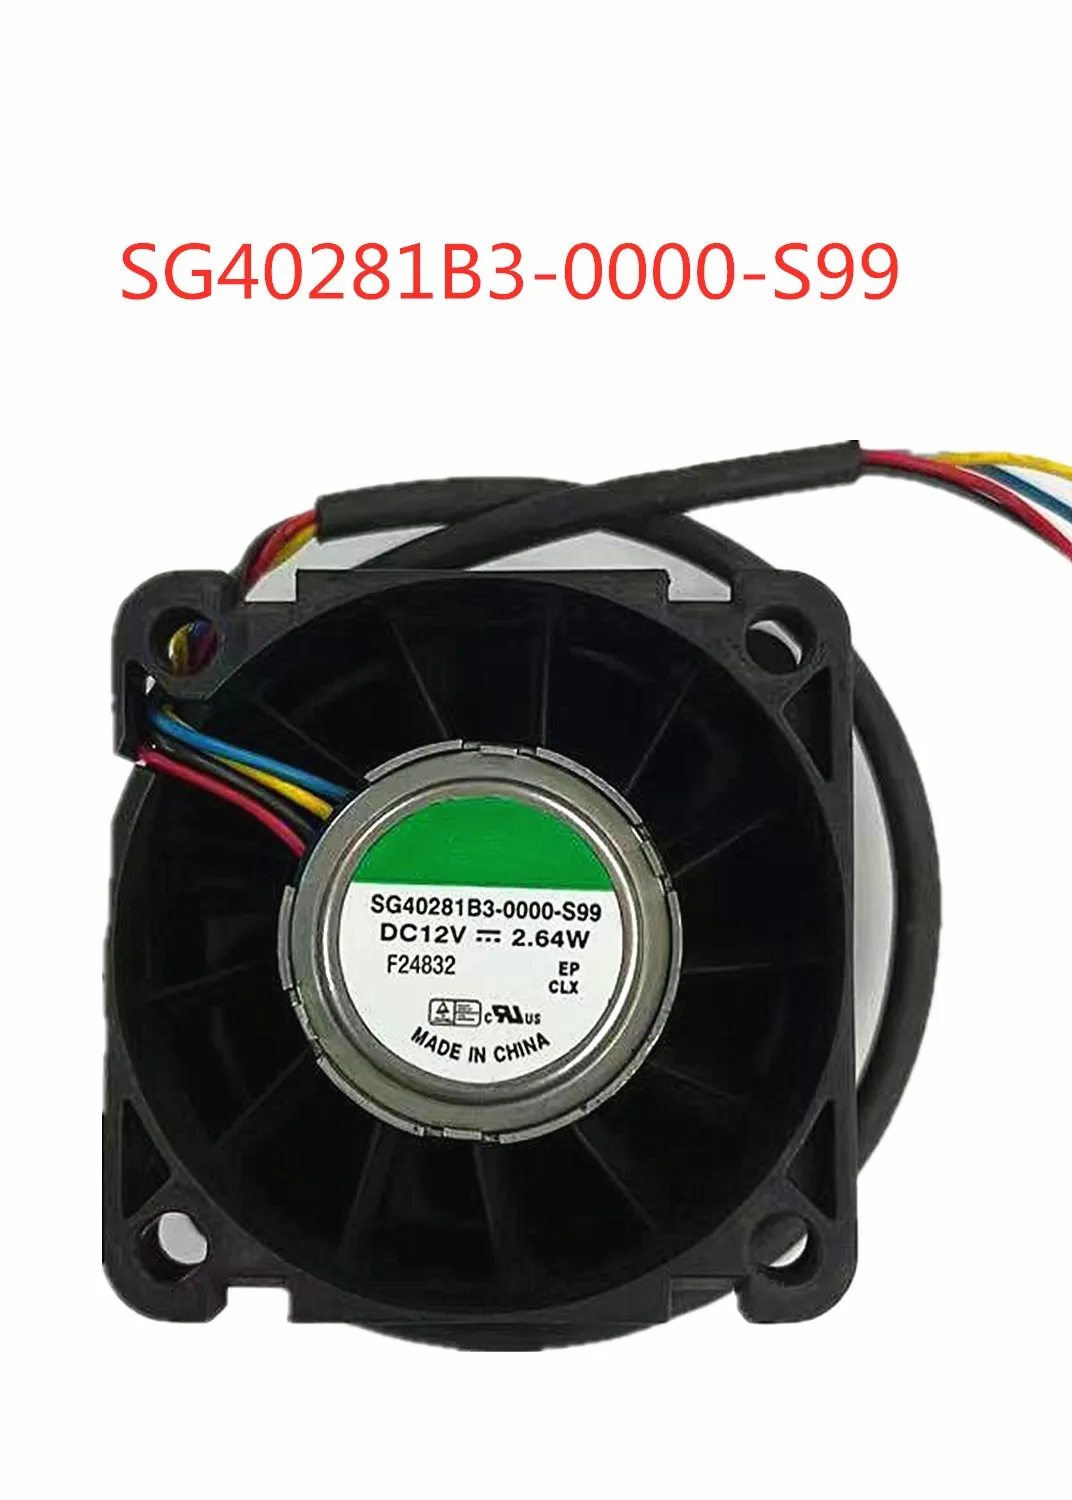 

for SUNON SG40281B3-0000-S99 DC 12V 2.64W 40x40x28mm 4-wire Server Cooling Fan